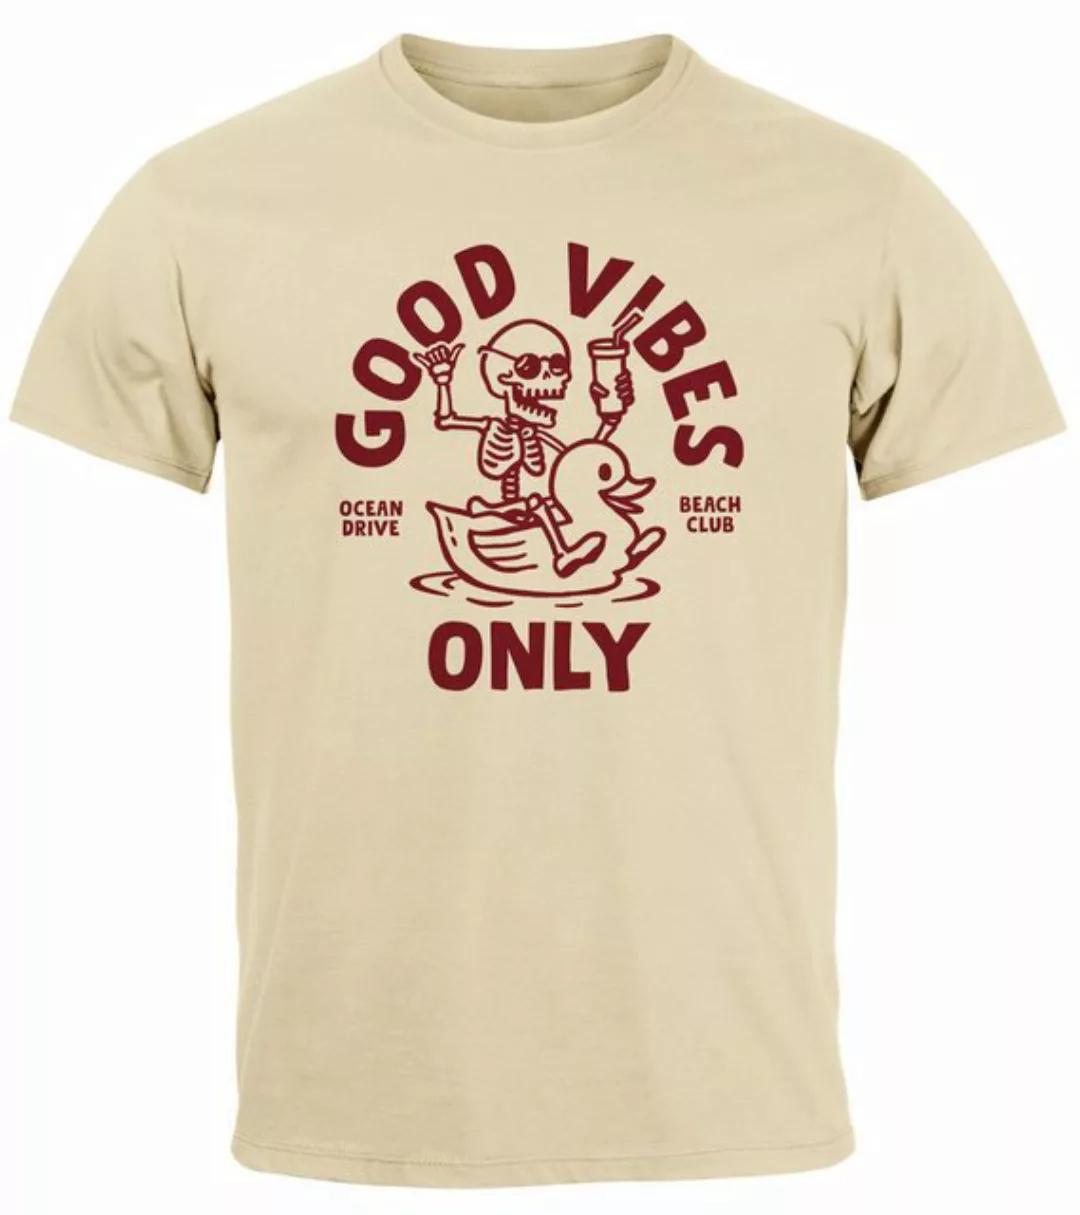 Neverless Print-Shirt Herren T-Shirt Printshirt Spruch Good Vibes Only Skel günstig online kaufen